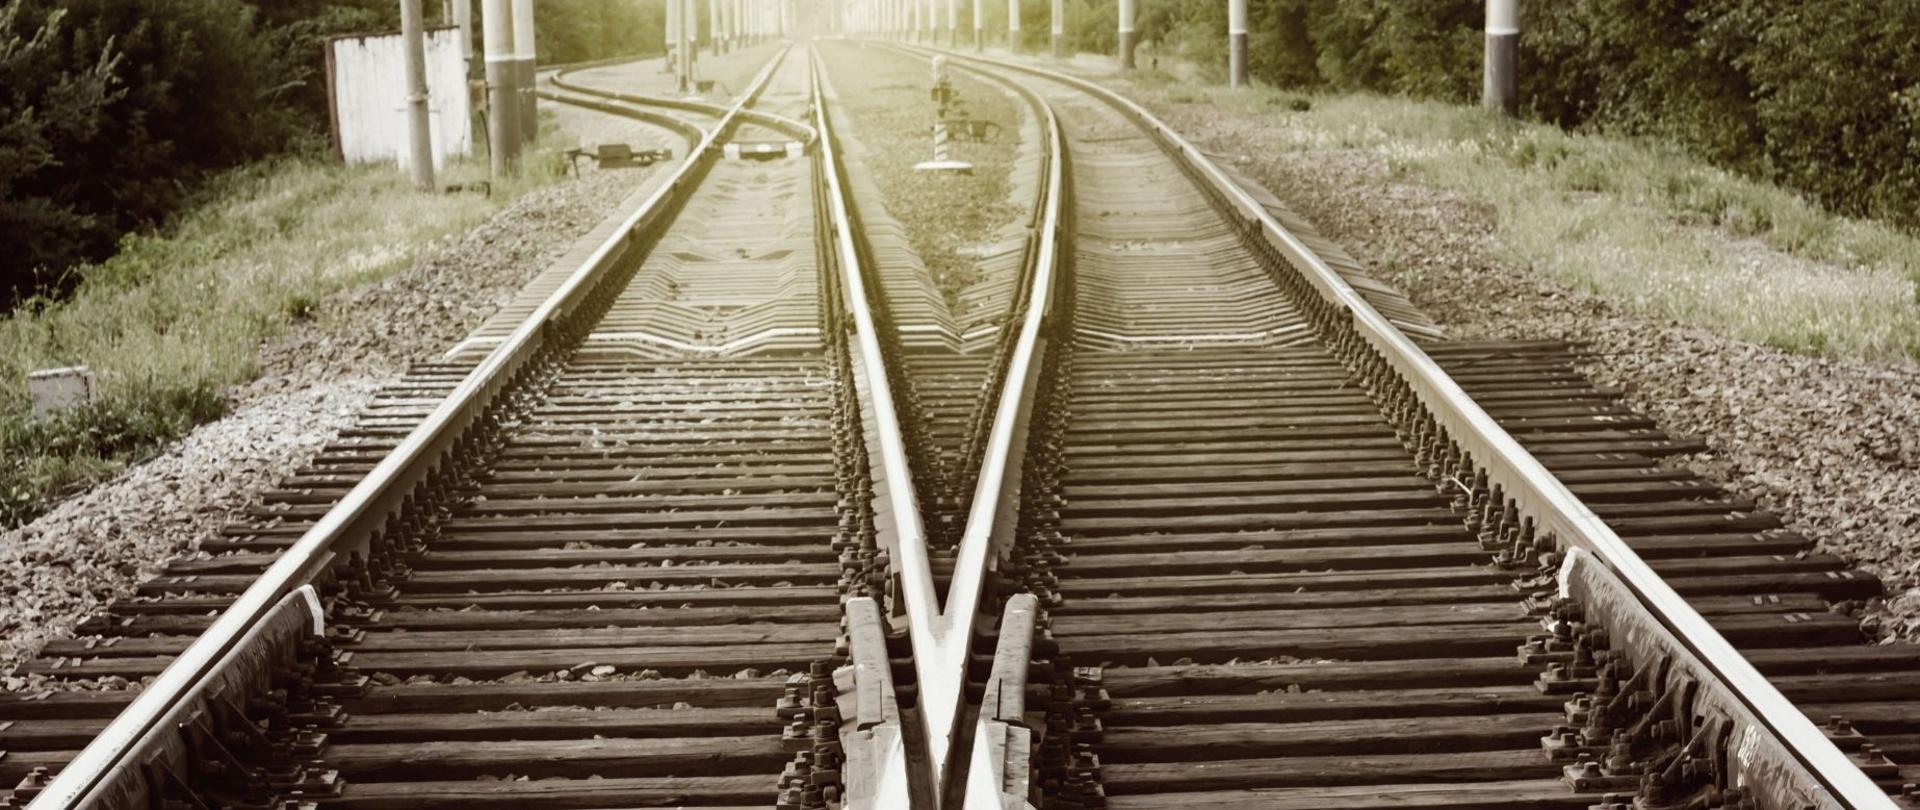 Zdjęcie przedstawia fragment torów kolejowych, rozchodzących się od zwrotnic w trzech różnych kierunkach. 